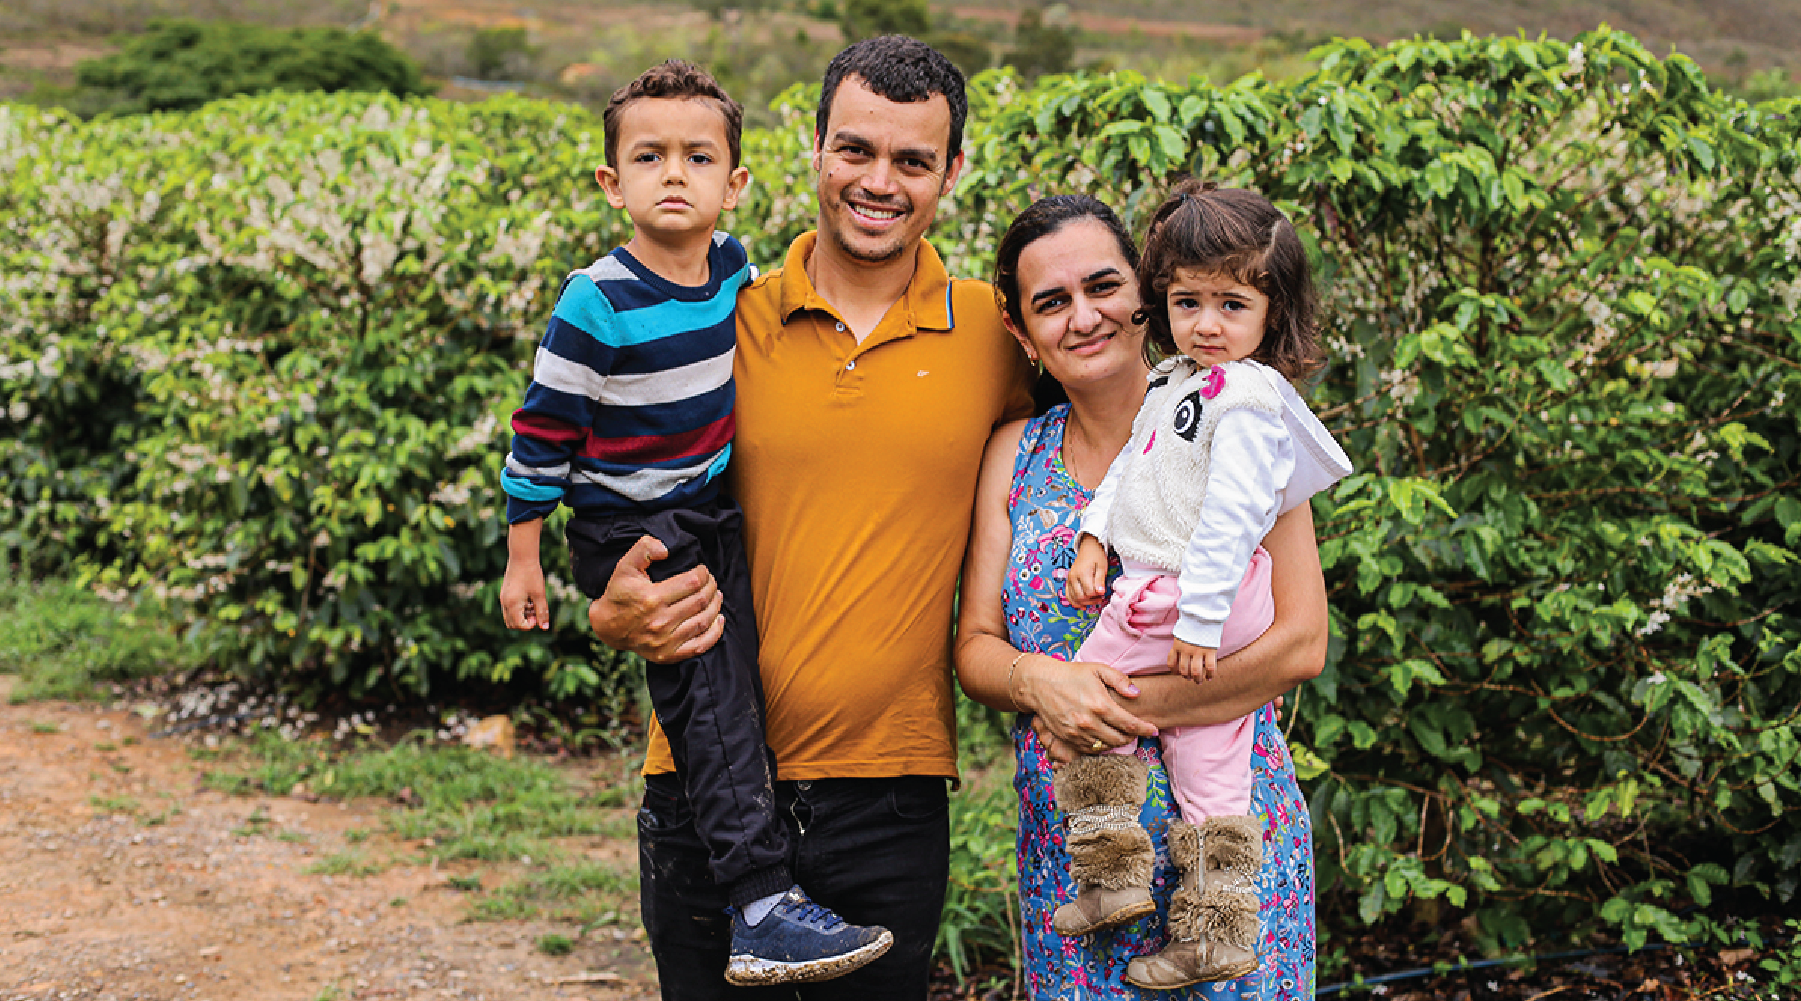 Brazilian coffee producer, Kleumon Silva Moreira and his family